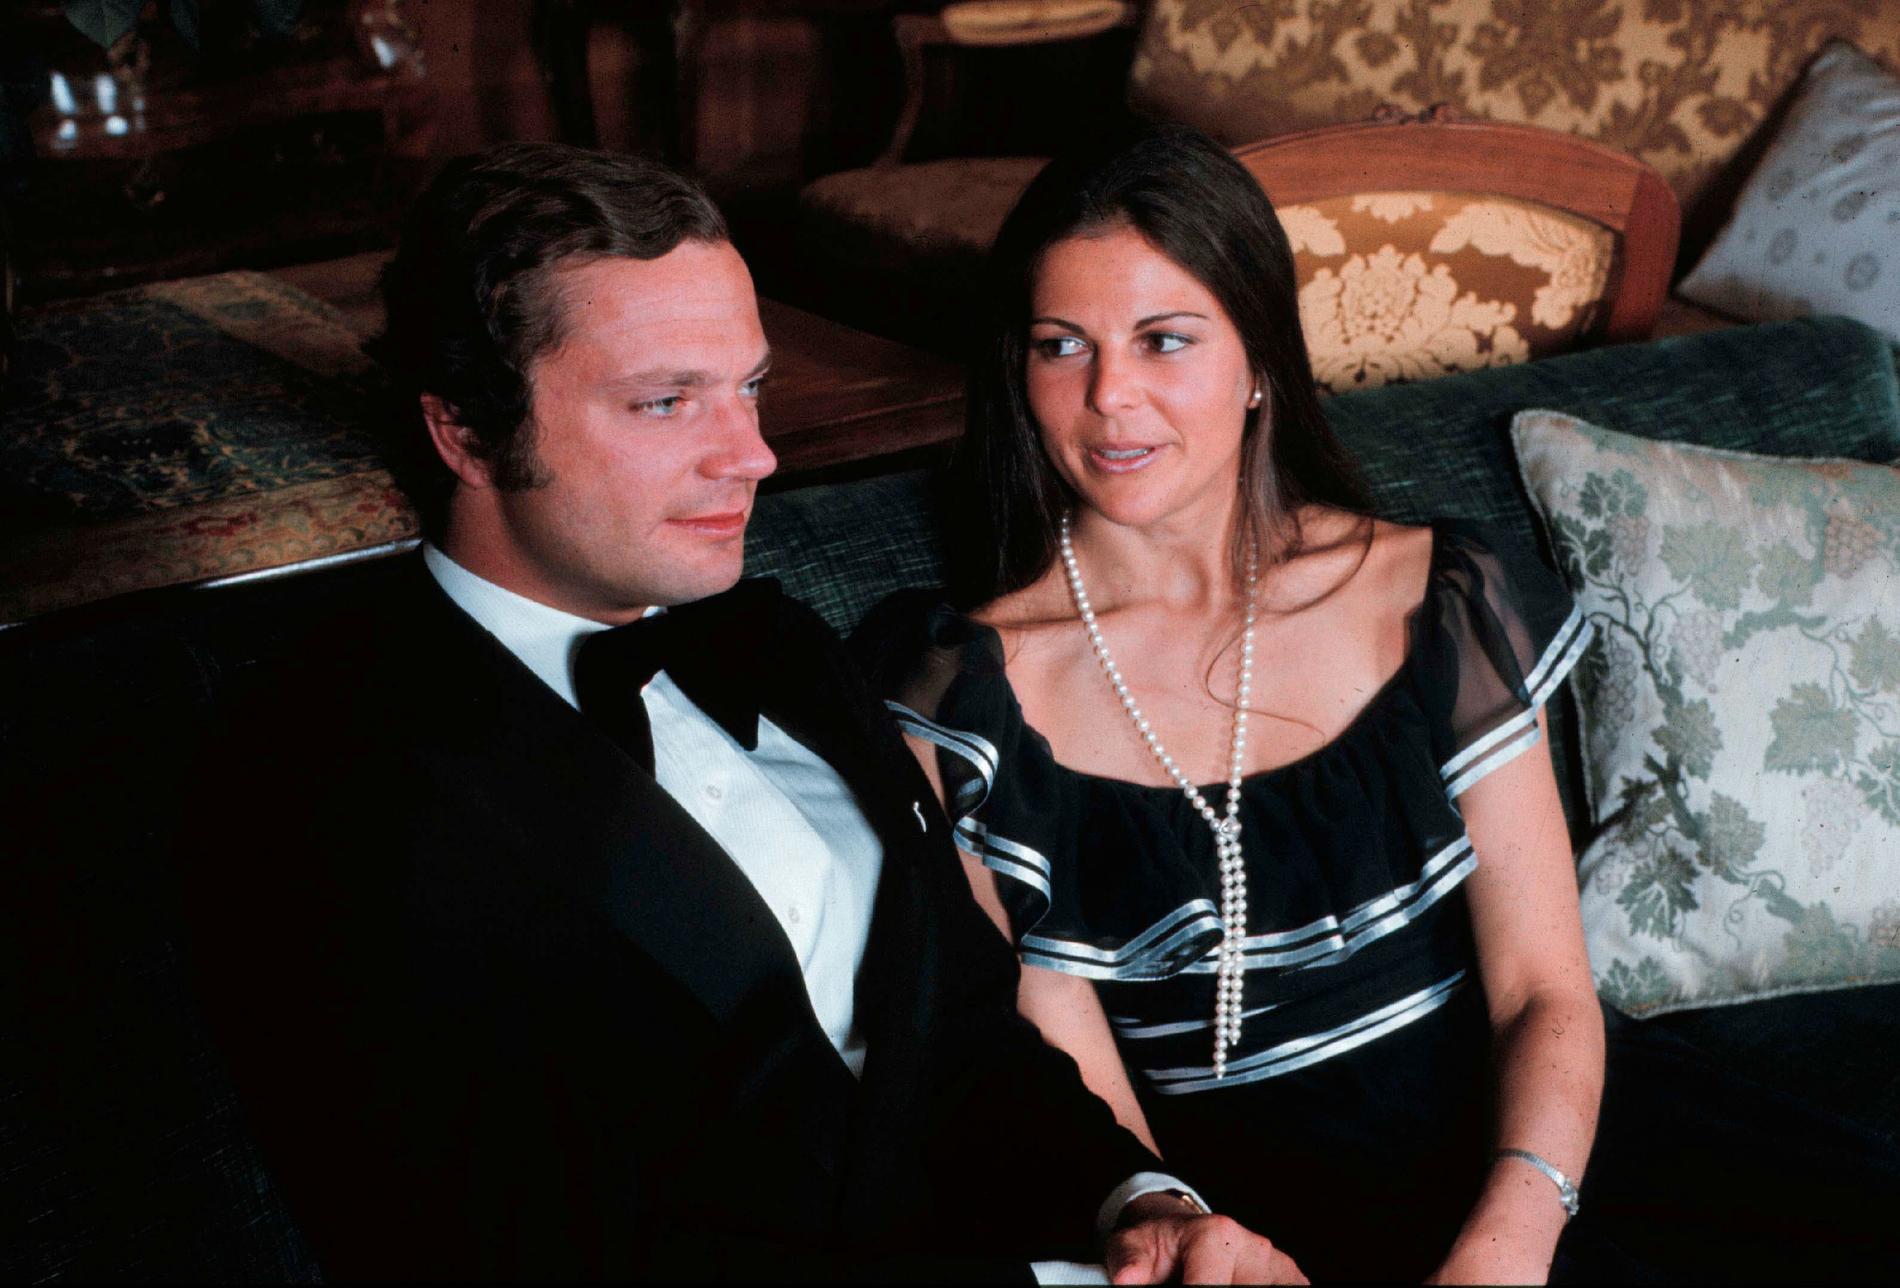 Så här såg det ut när unge kung Carl XVI Gustaf presenterade fröken Silvia Sommerlath som sin blivande hustru.